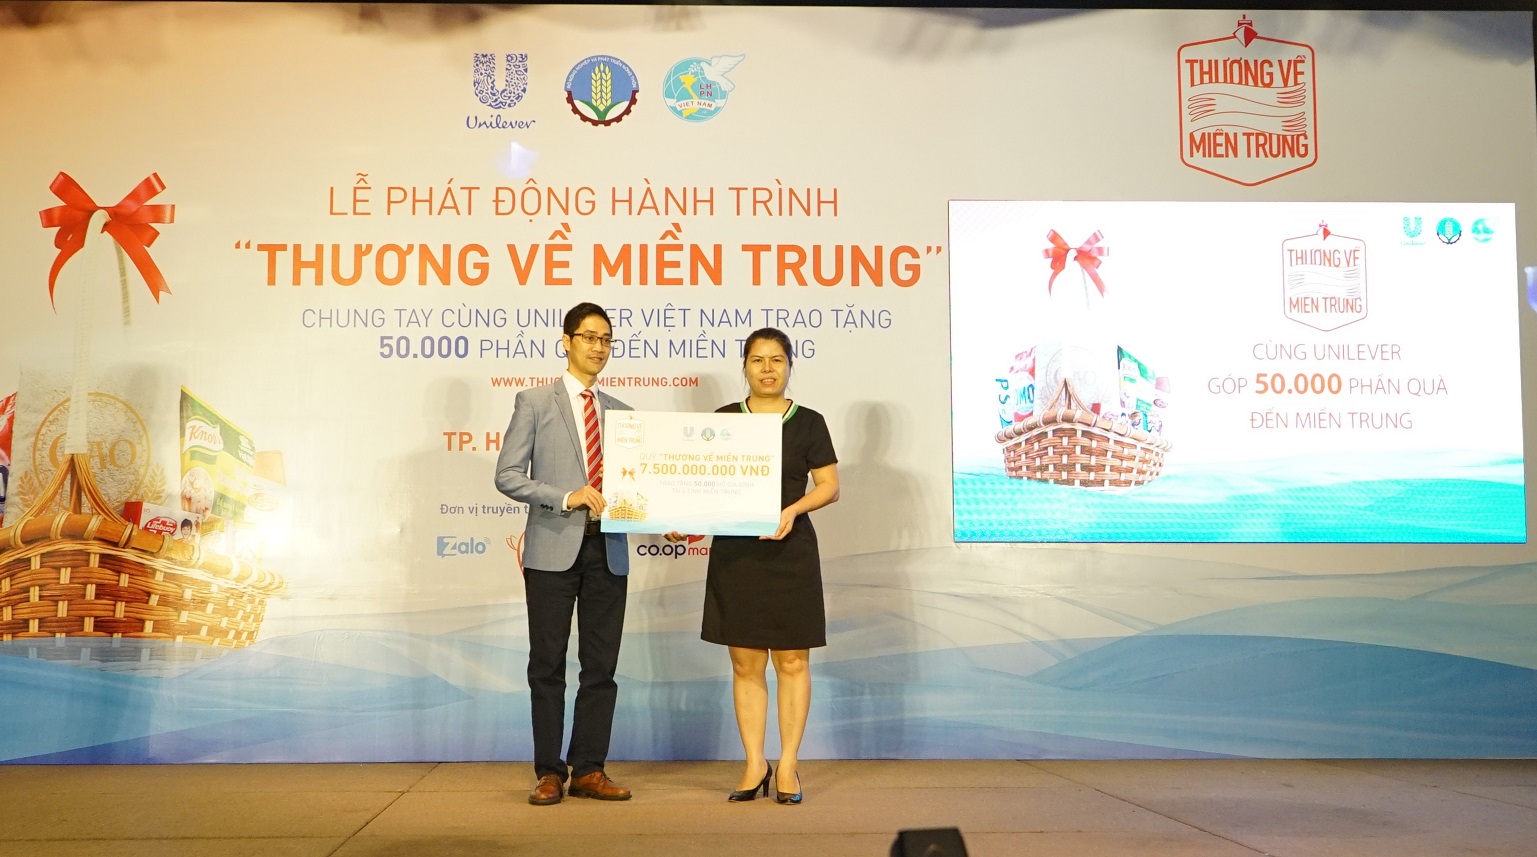 2. Đại diện công ty Unilever trao tượng trưng 50.000 phần quà cho 4 tỉnh miền Trung